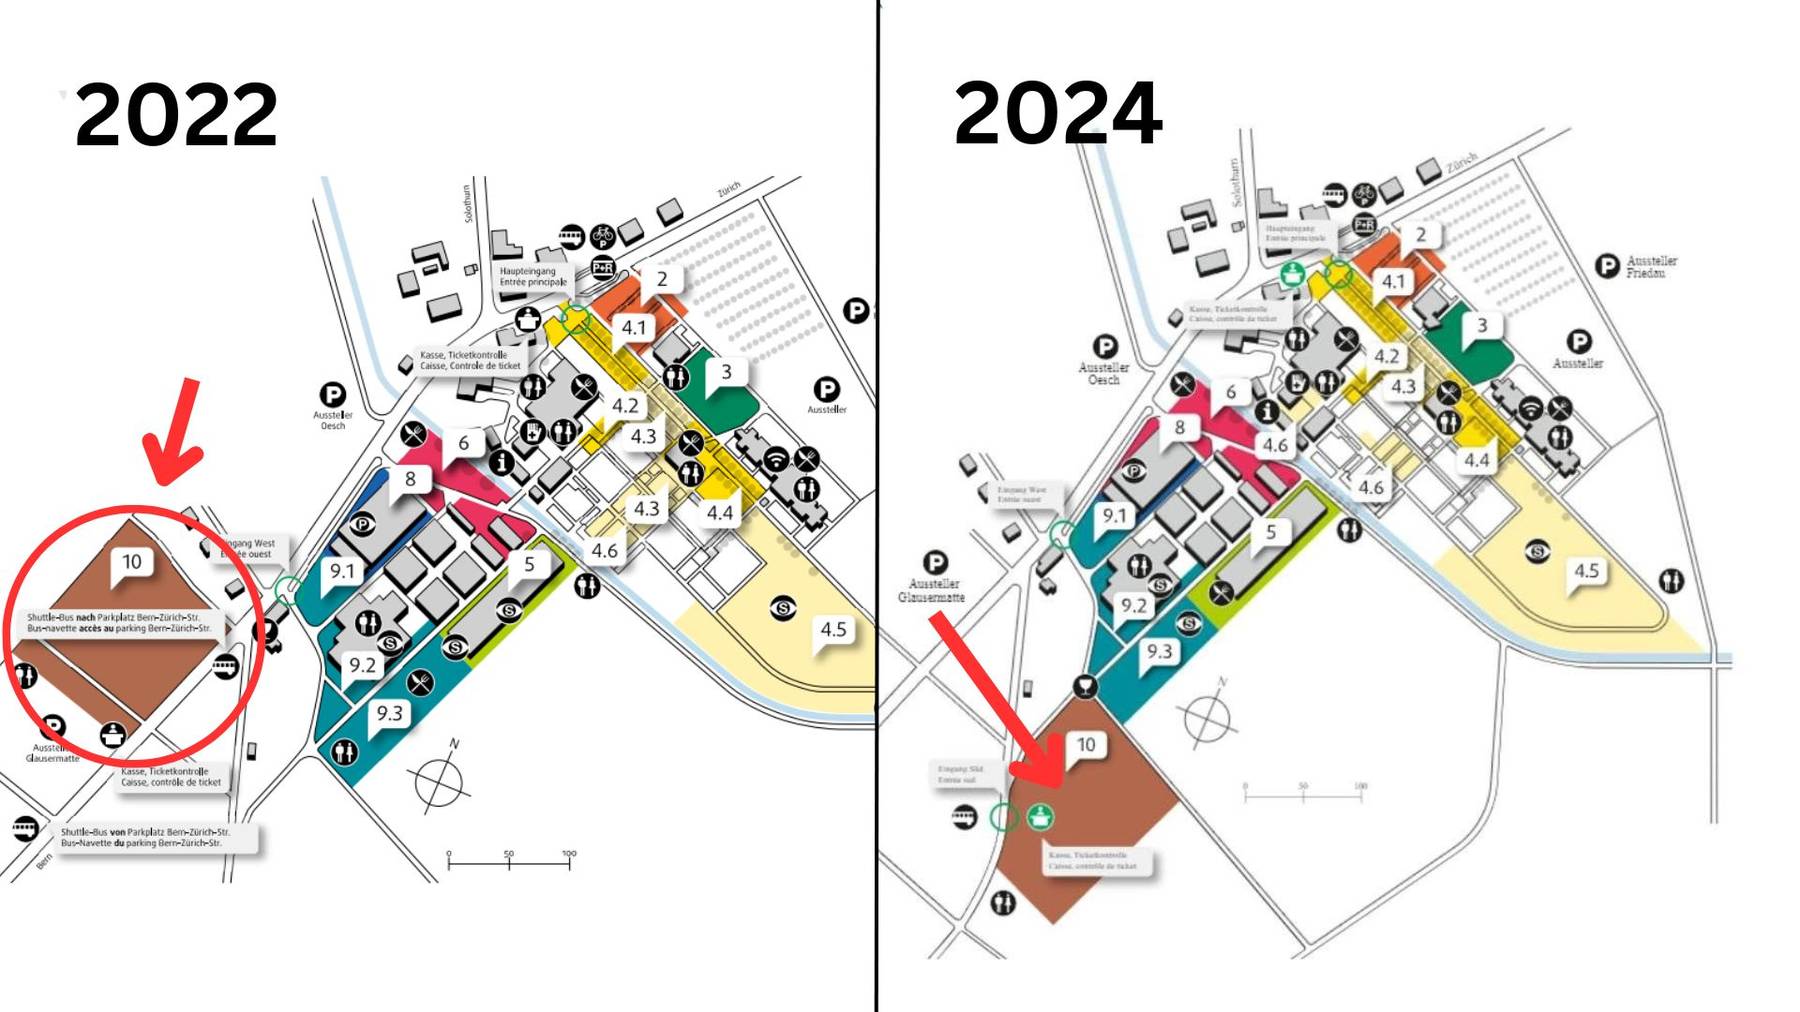 Messeplan 2022 und 2024